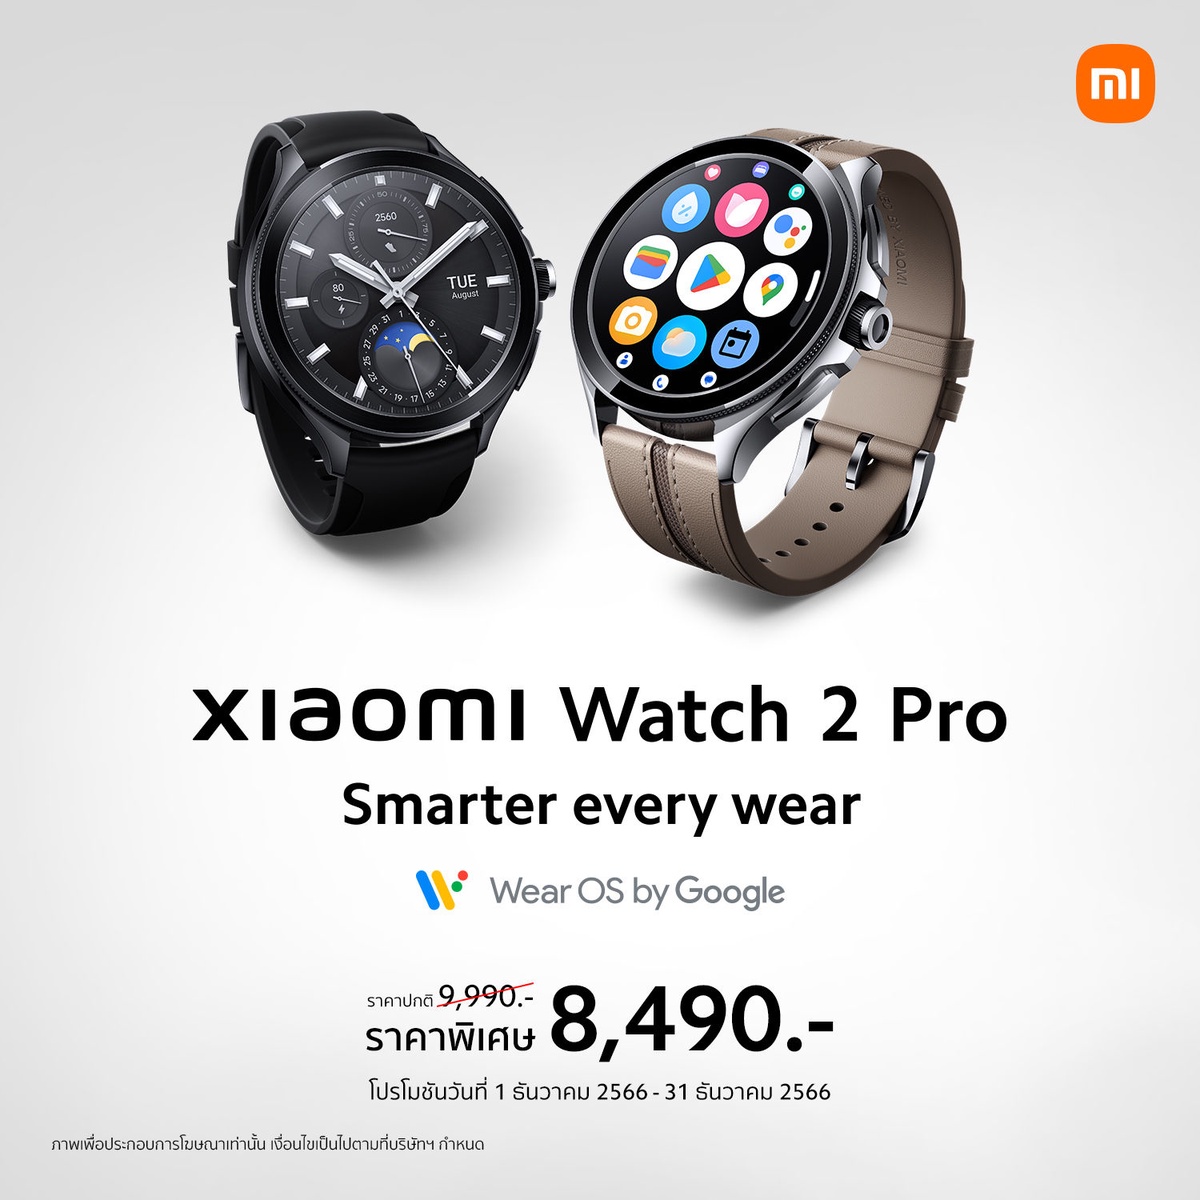 Xiaomi Watch 2 Pro นาฬิกาอัจฉริยะที่ช่วยให้คุณใช้ชีวิตได้สมาร์ทยิ่งขึ้น วางจำหน่ายอย่างเป็นทางการแล้วในราคา 9,990